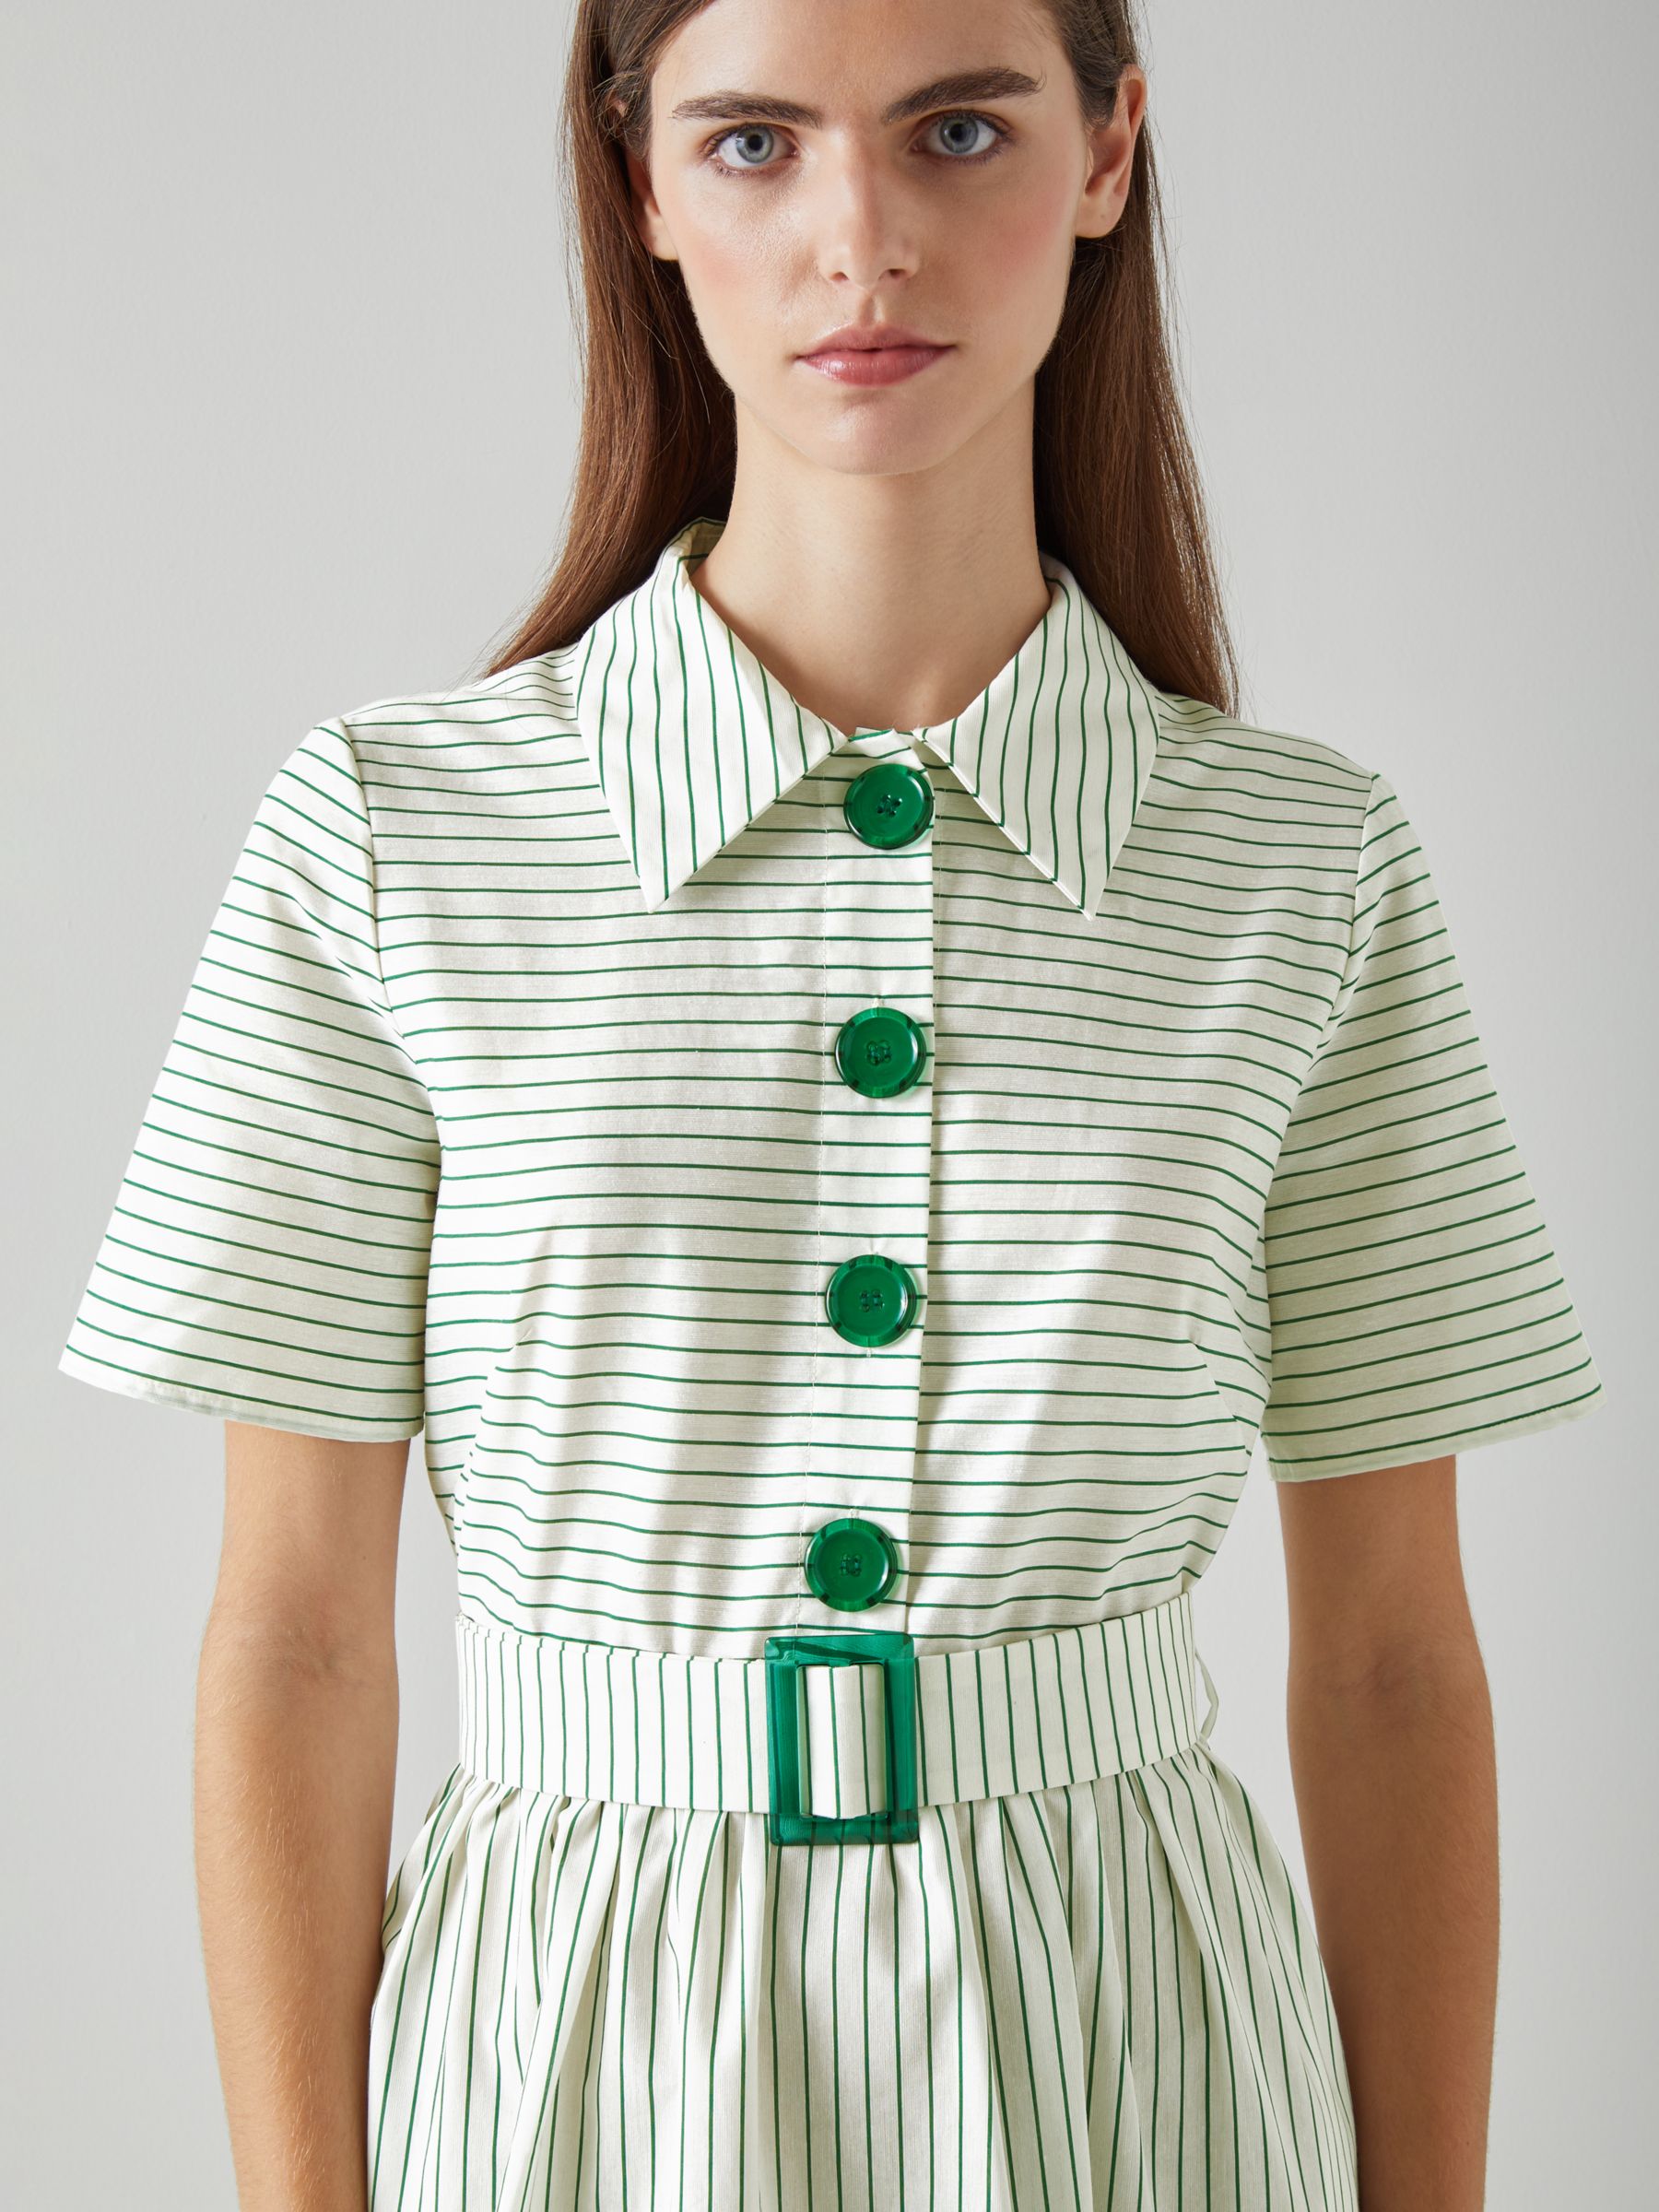 L.K.Bennett Bextor Stripe Shirt Dress, Cream/Green, 6